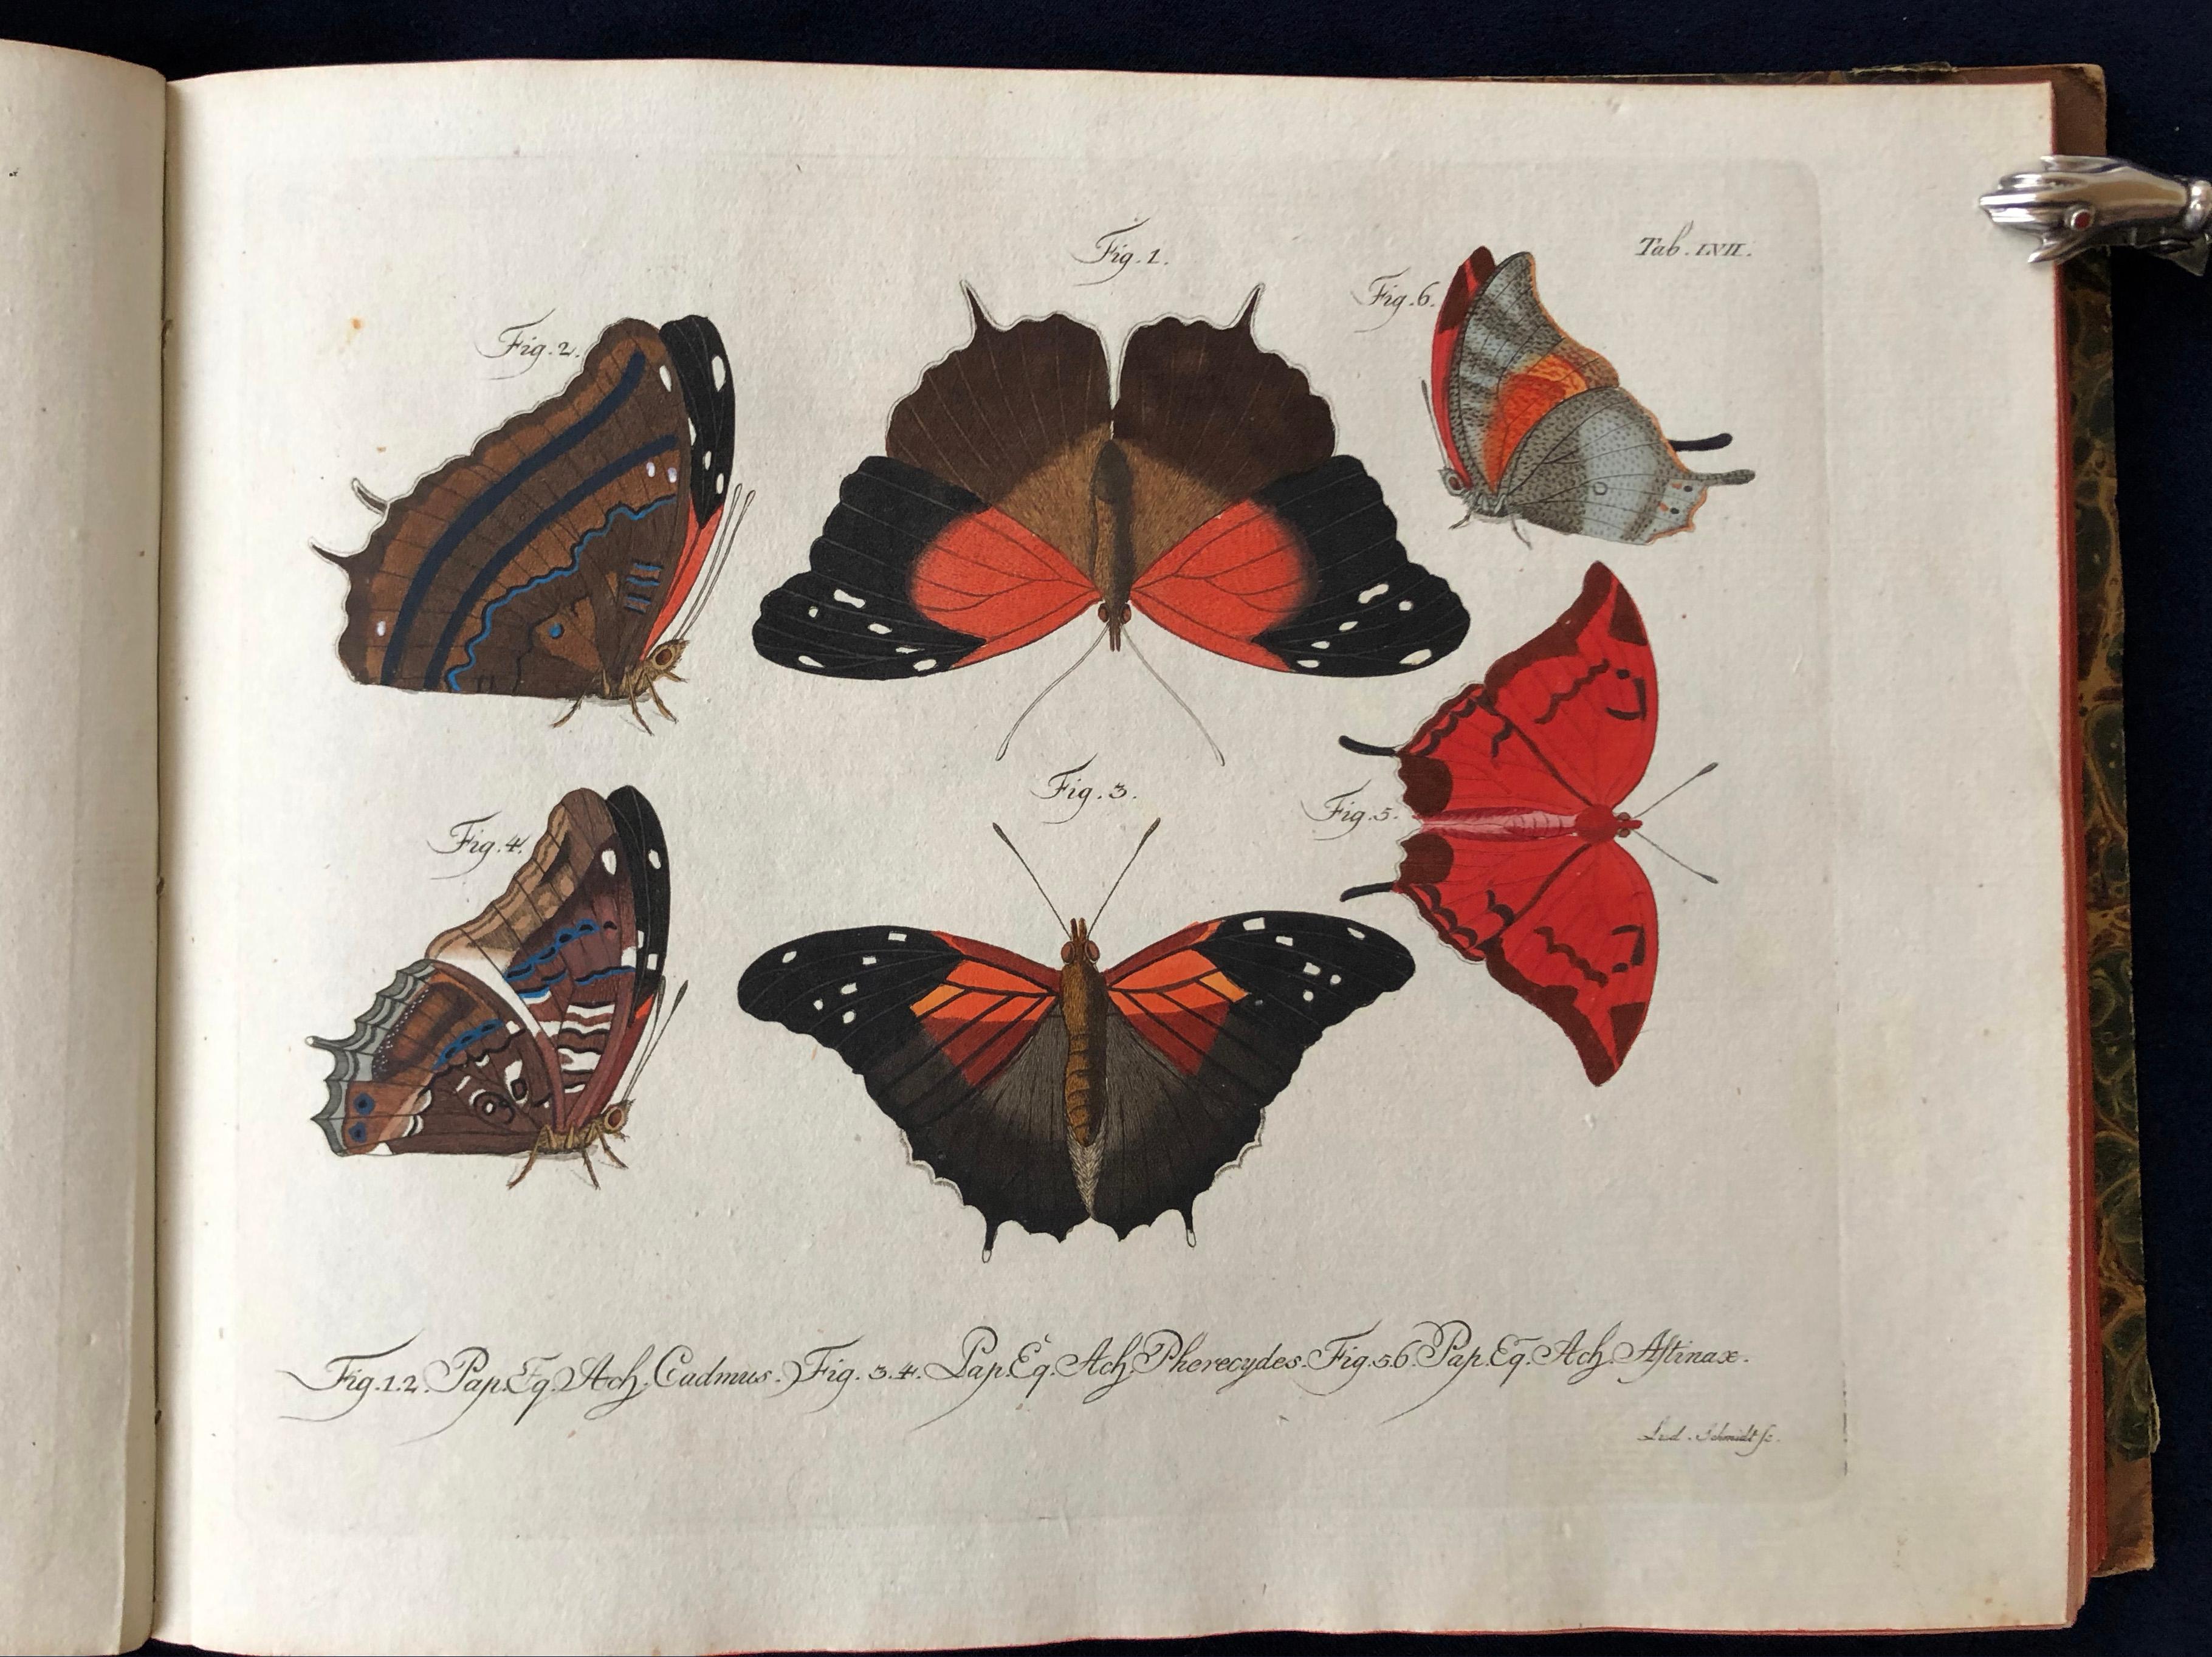 Paper Schmetterlinge 'Butterflies' by Carl Gustav Jablonsky  & J.F.W. Herbst For Sale